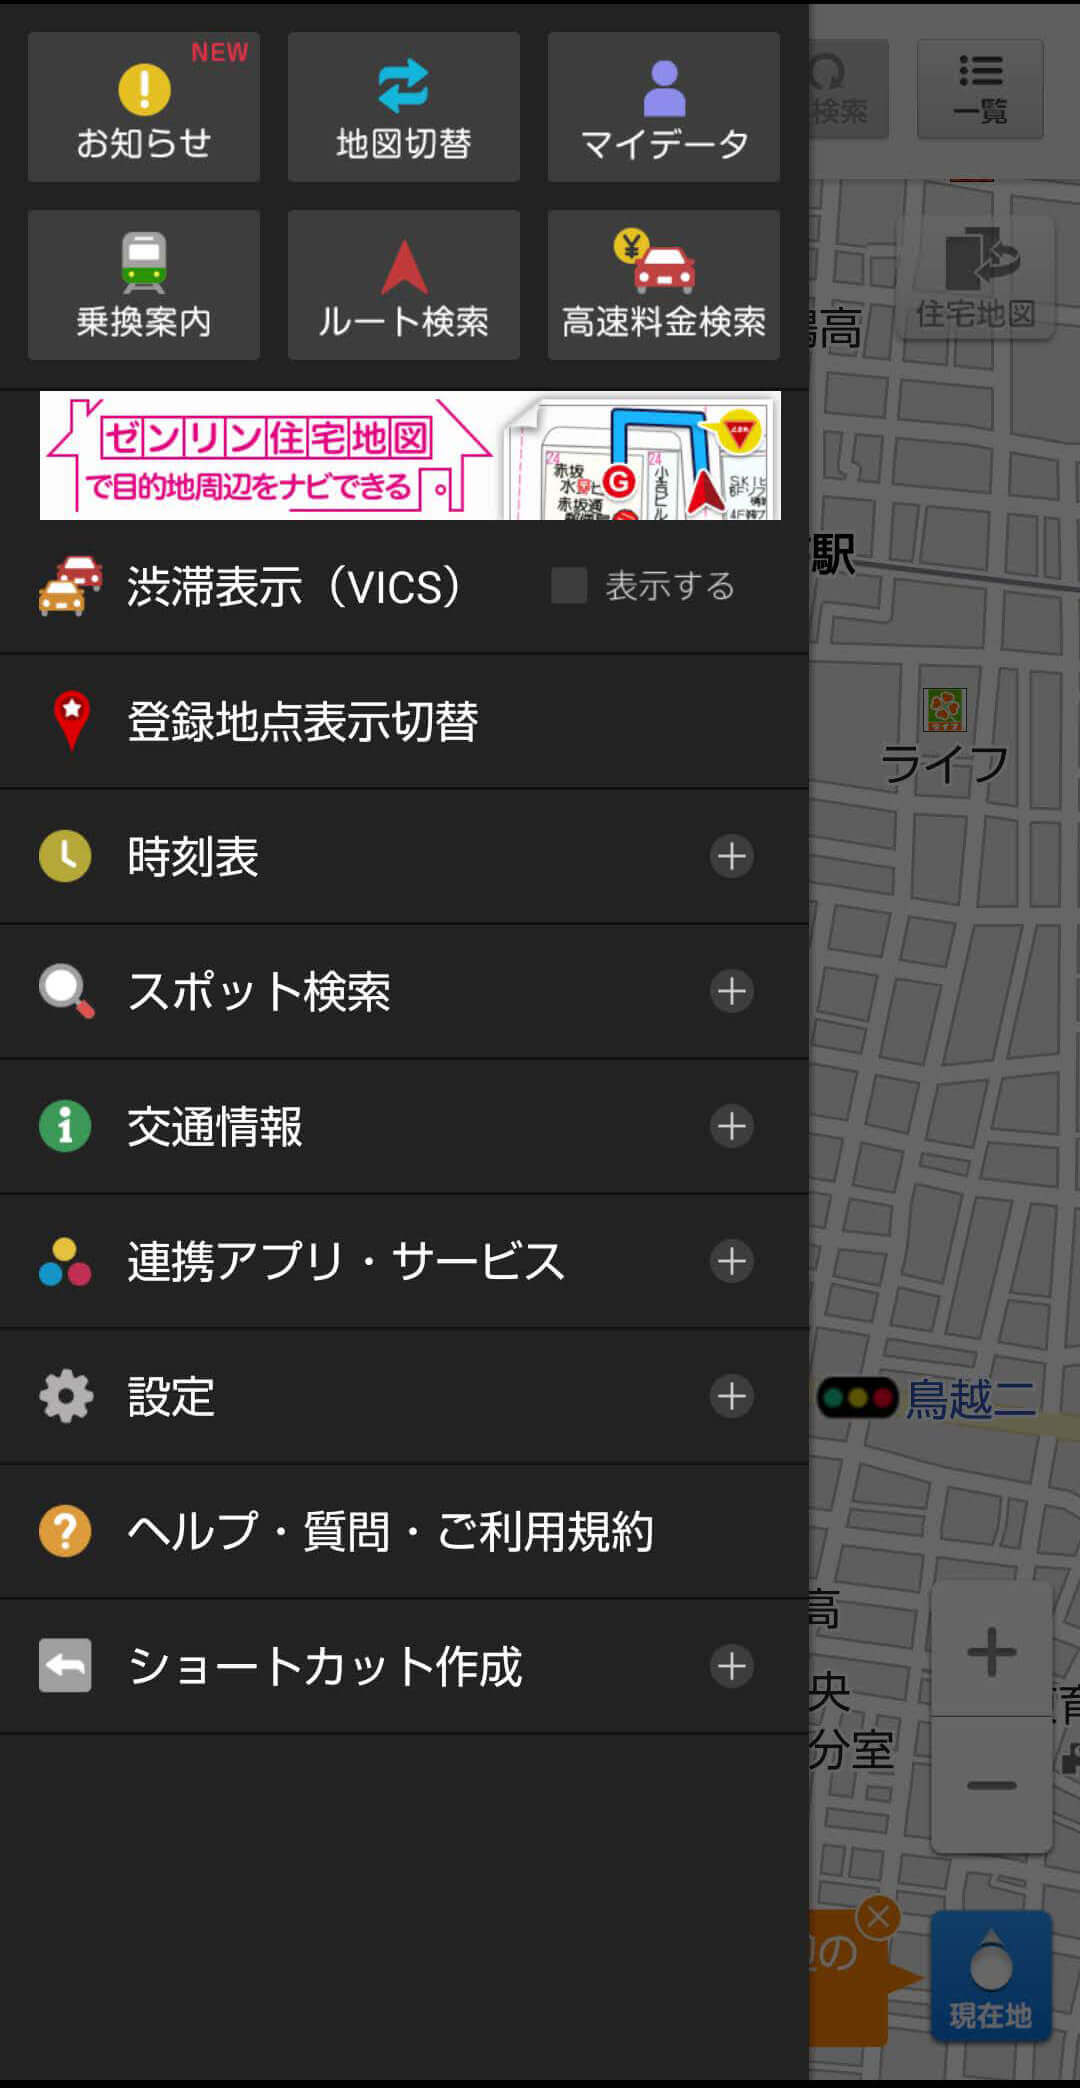 地図アプリのスクショ画像